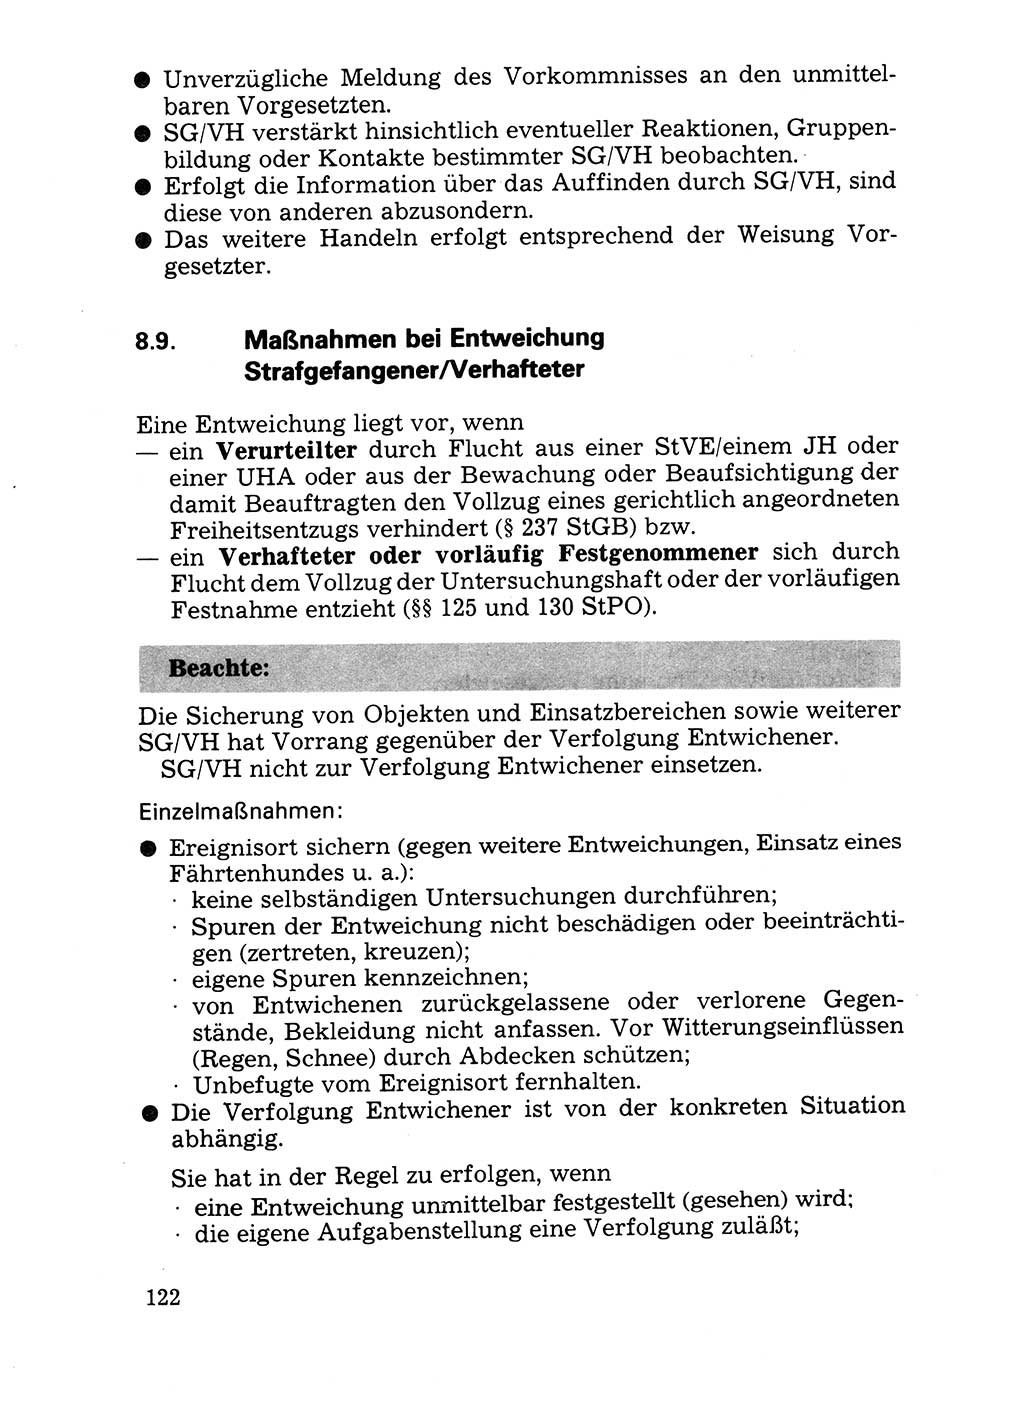 Handbuch für operative Dienste, Abteilung Strafvollzug (SV) [Ministerium des Innern (MdI) Deutsche Demokratische Republik (DDR)] 1981, Seite 122 (Hb. op. D. Abt. SV MdI DDR 1981, S. 122)